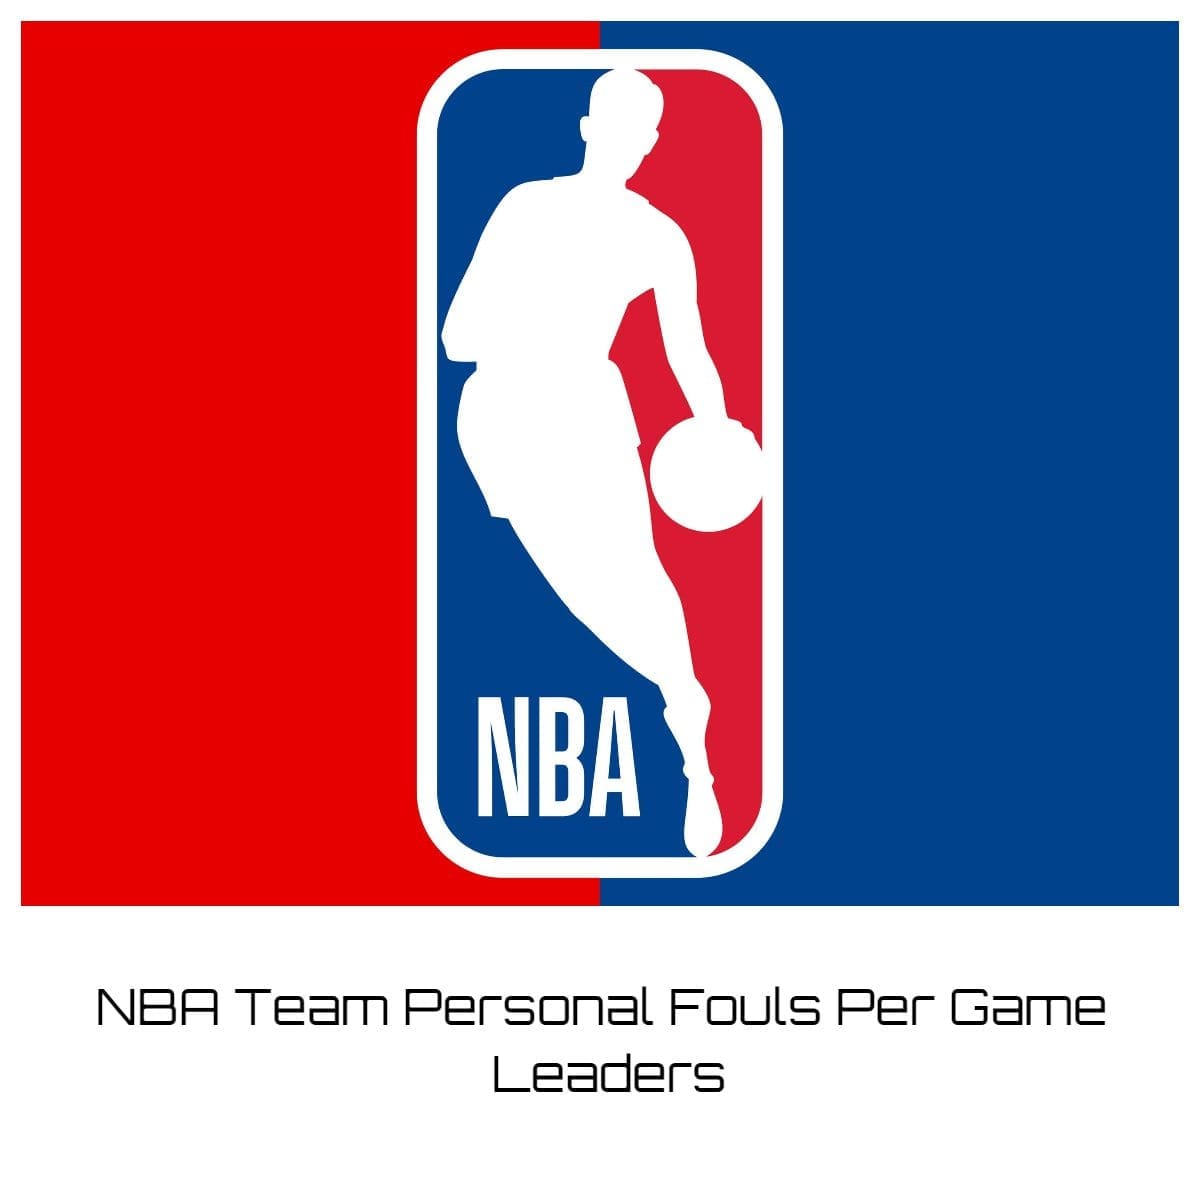 NBA Team Personal Fouls Per Game Leaders